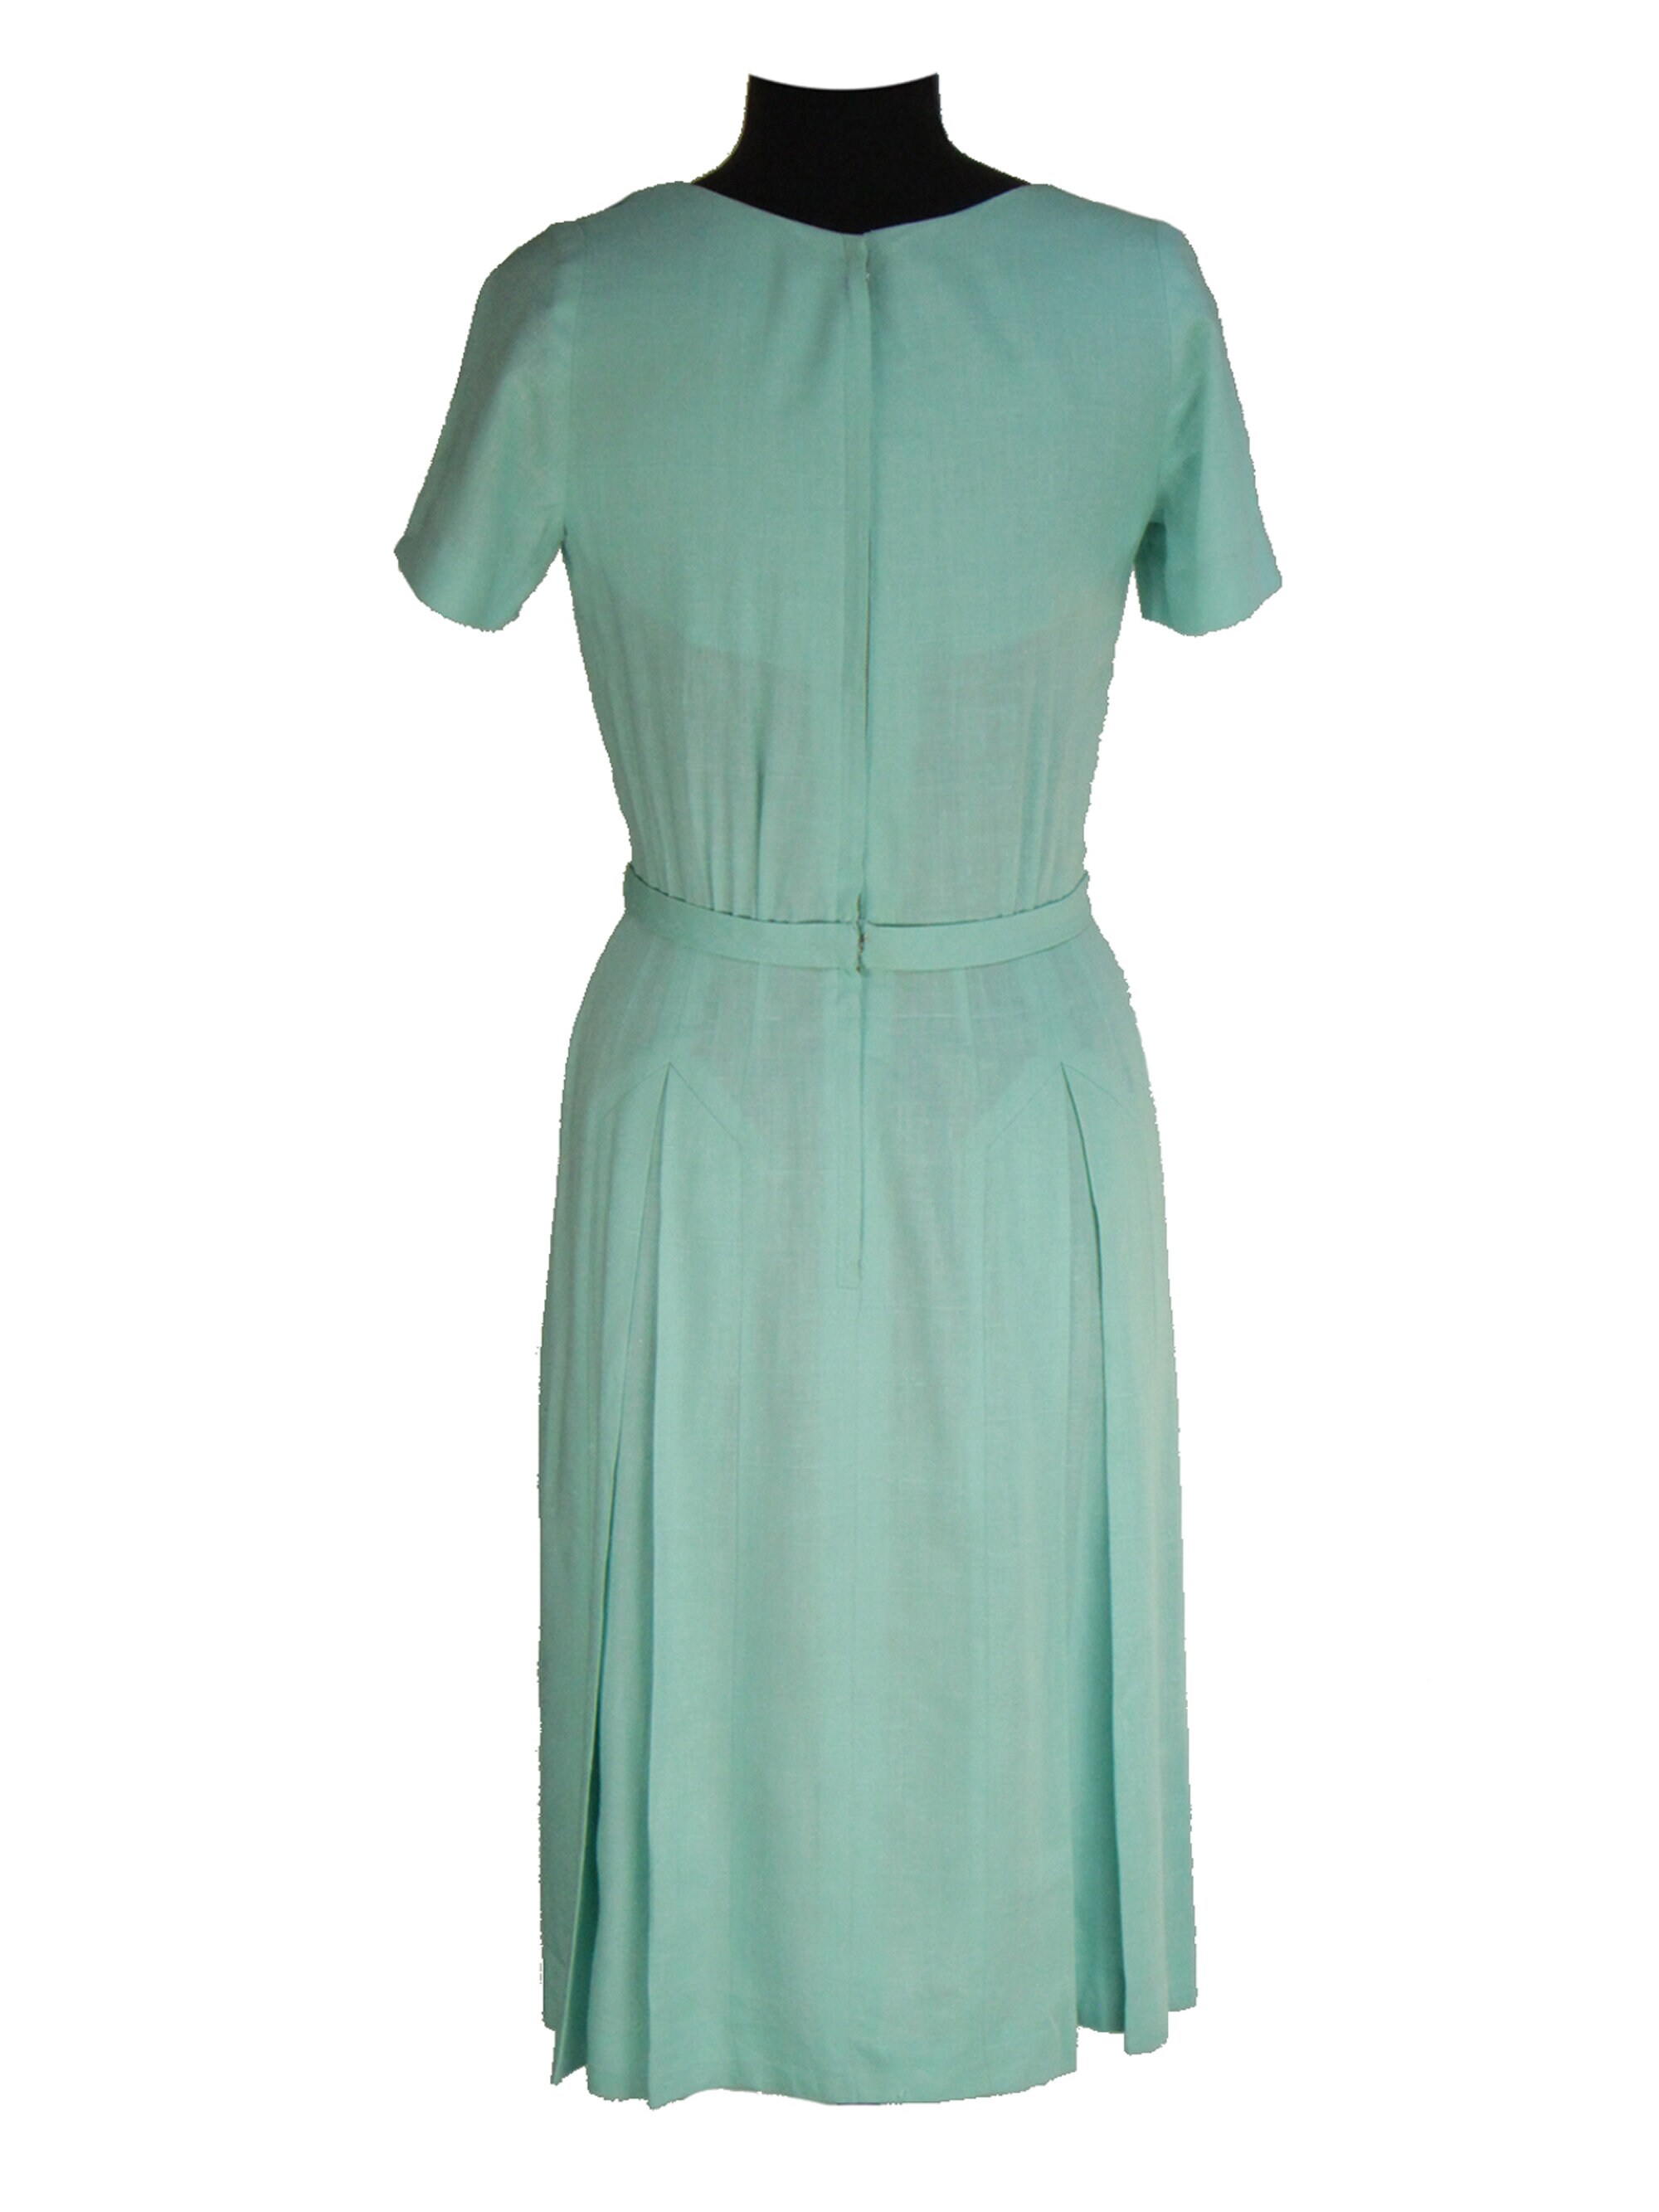 Mint Green Vintage 1930s Slub Linen Dress UK 8-10 | Etsy